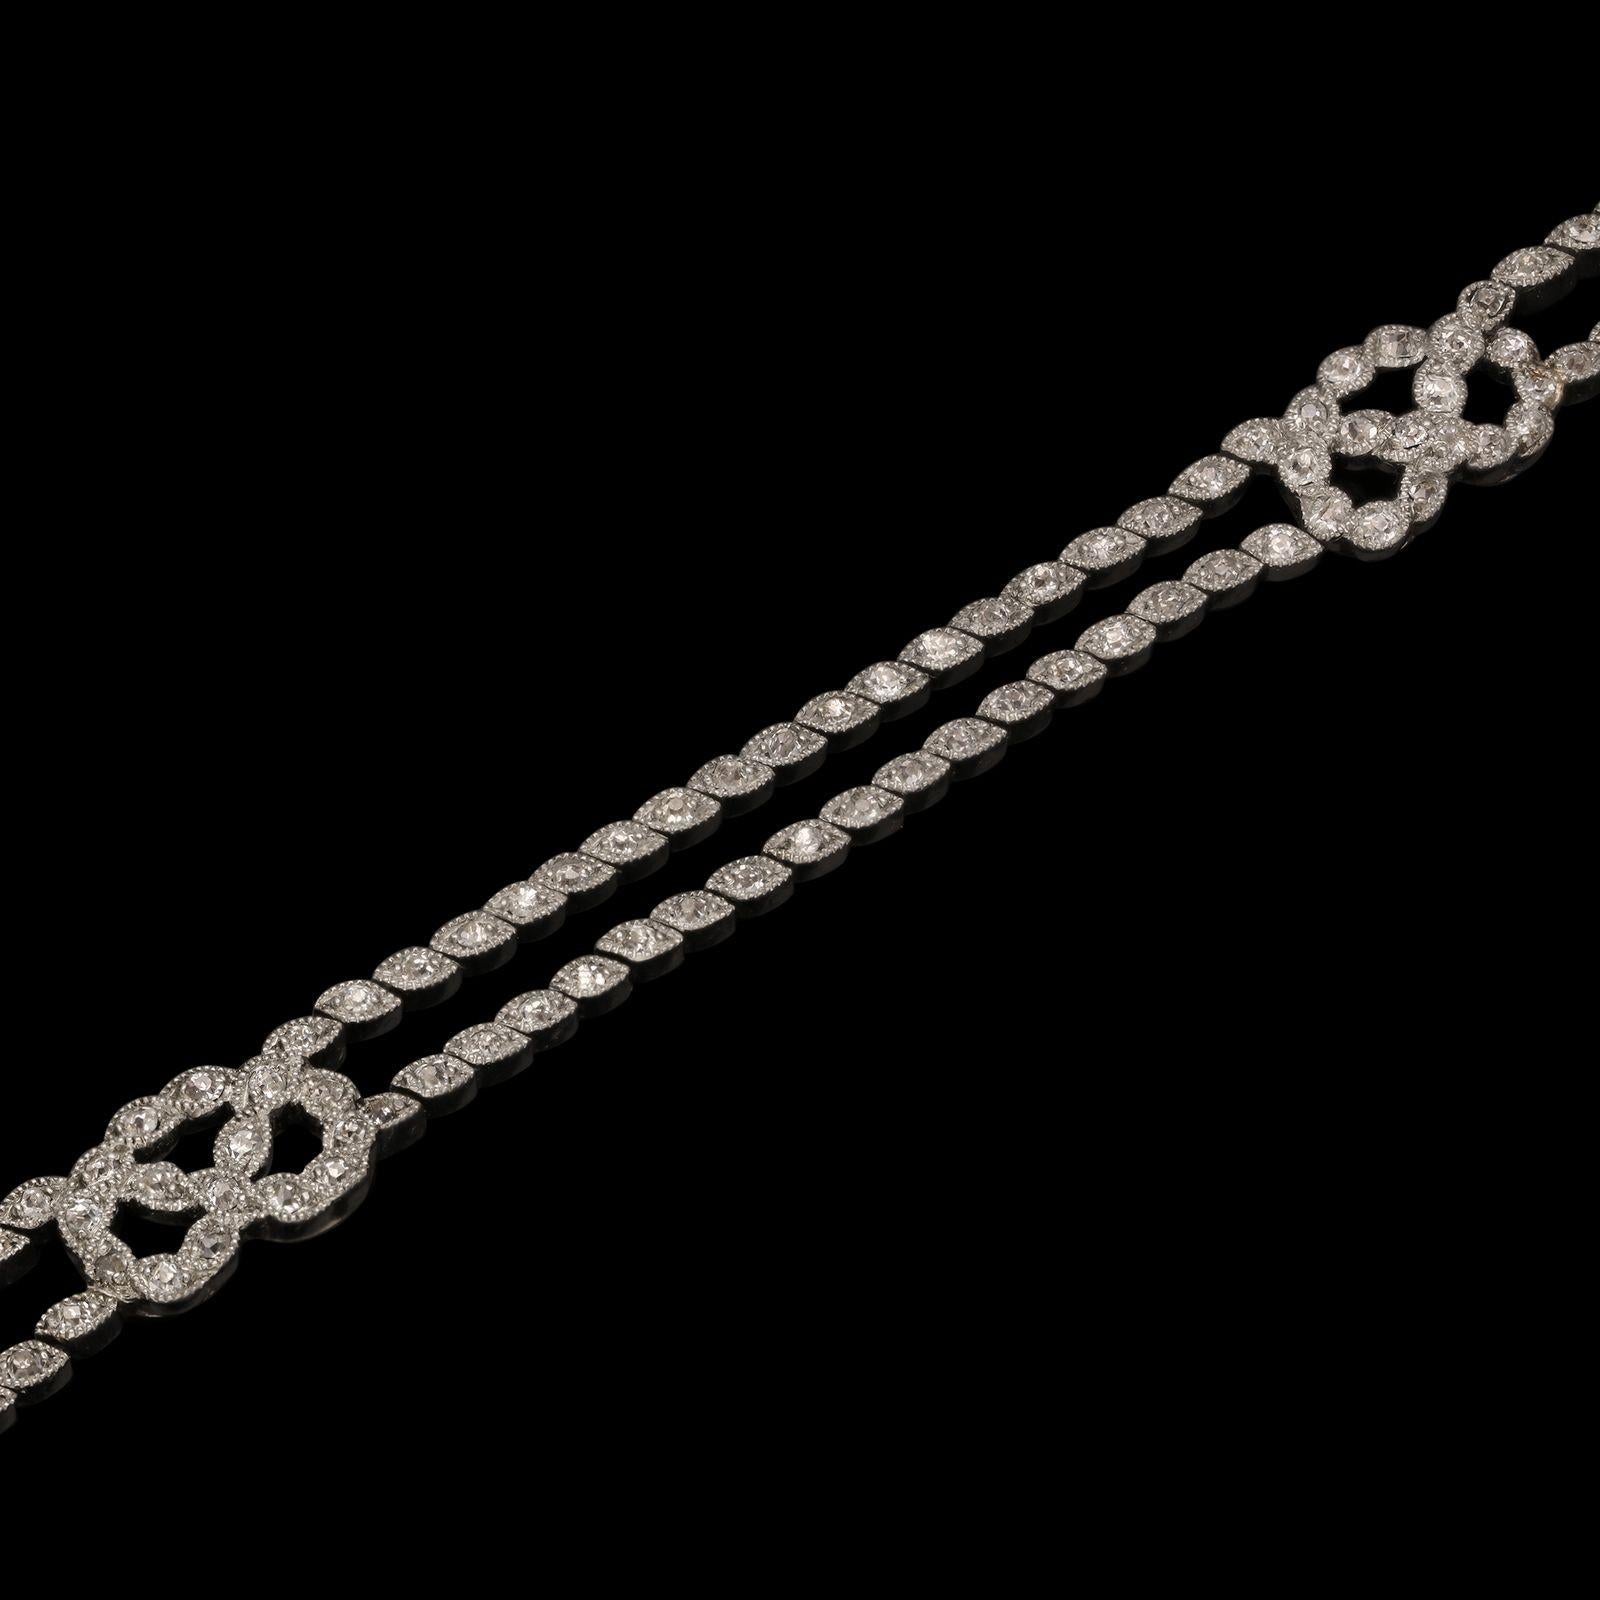 Superbe bracelet Belle Epoque en diamants et platine, datant de 1910 environ, formé de deux rangées de diamants de taille ancienne sertis dans des colliers en platine de forme marquise, avec une bordure en mille-grains placée en diagonale donnant